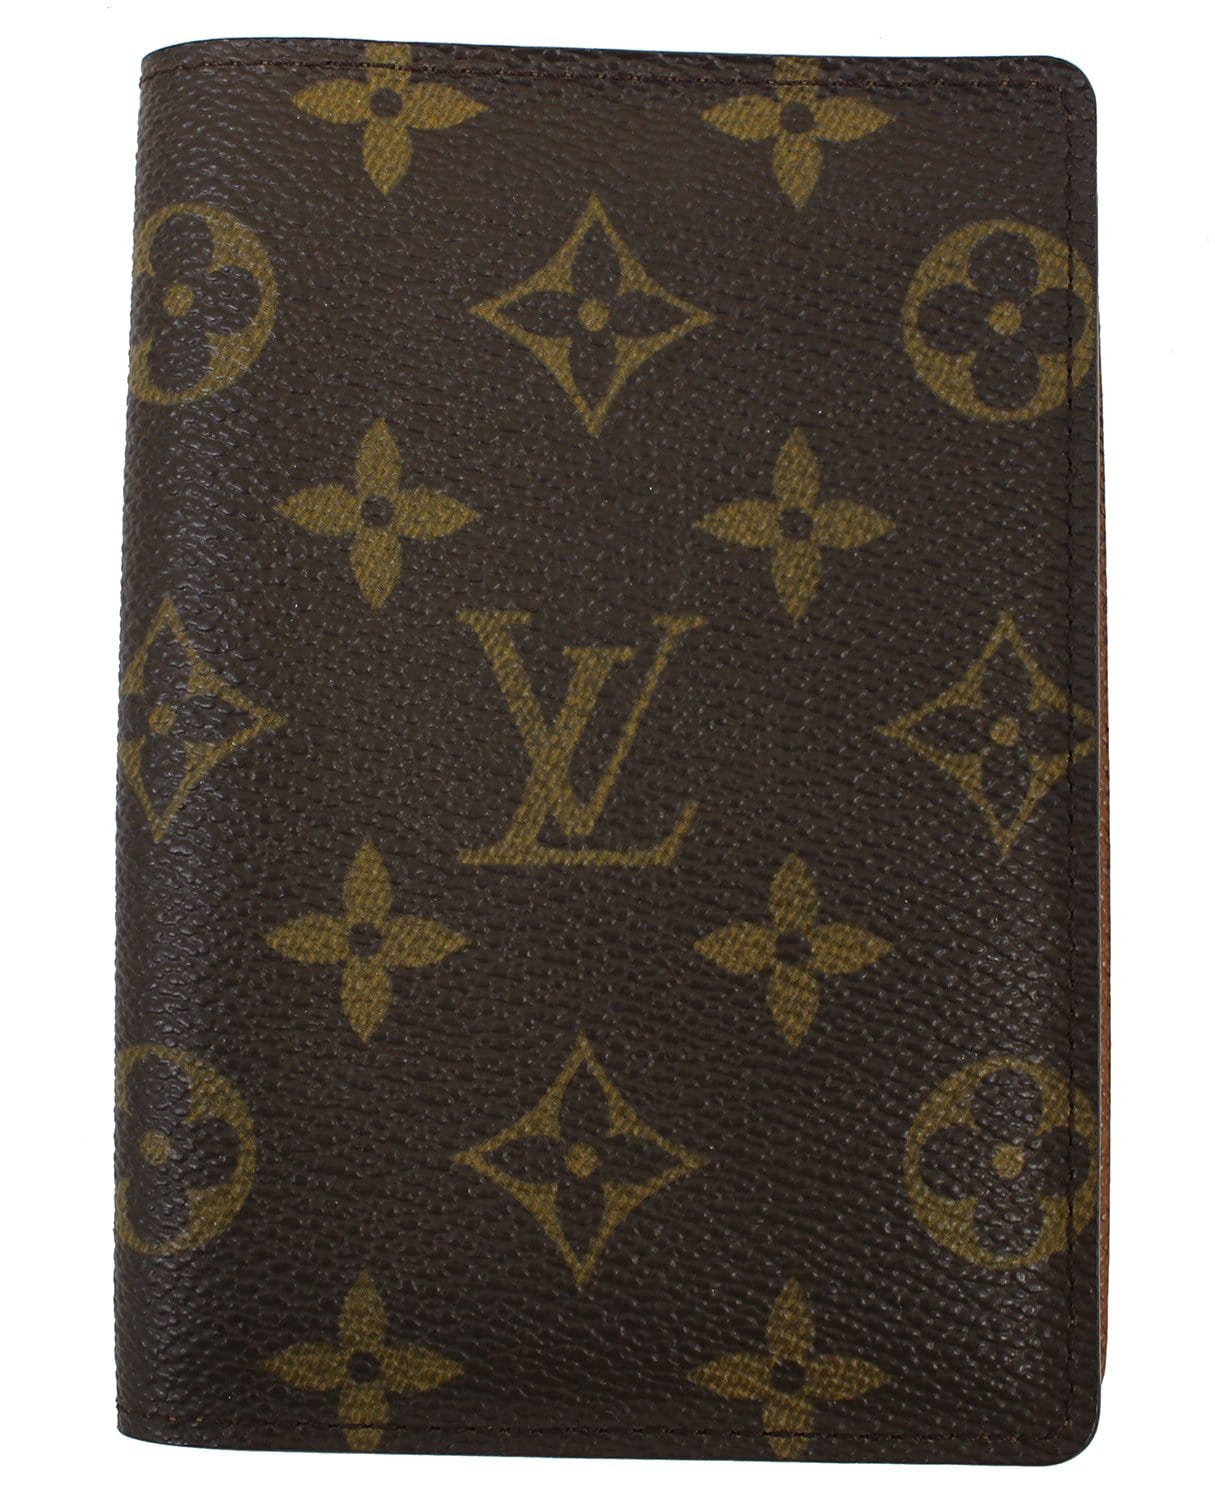 louis Vuitton passport cover. #Authentic #Designer